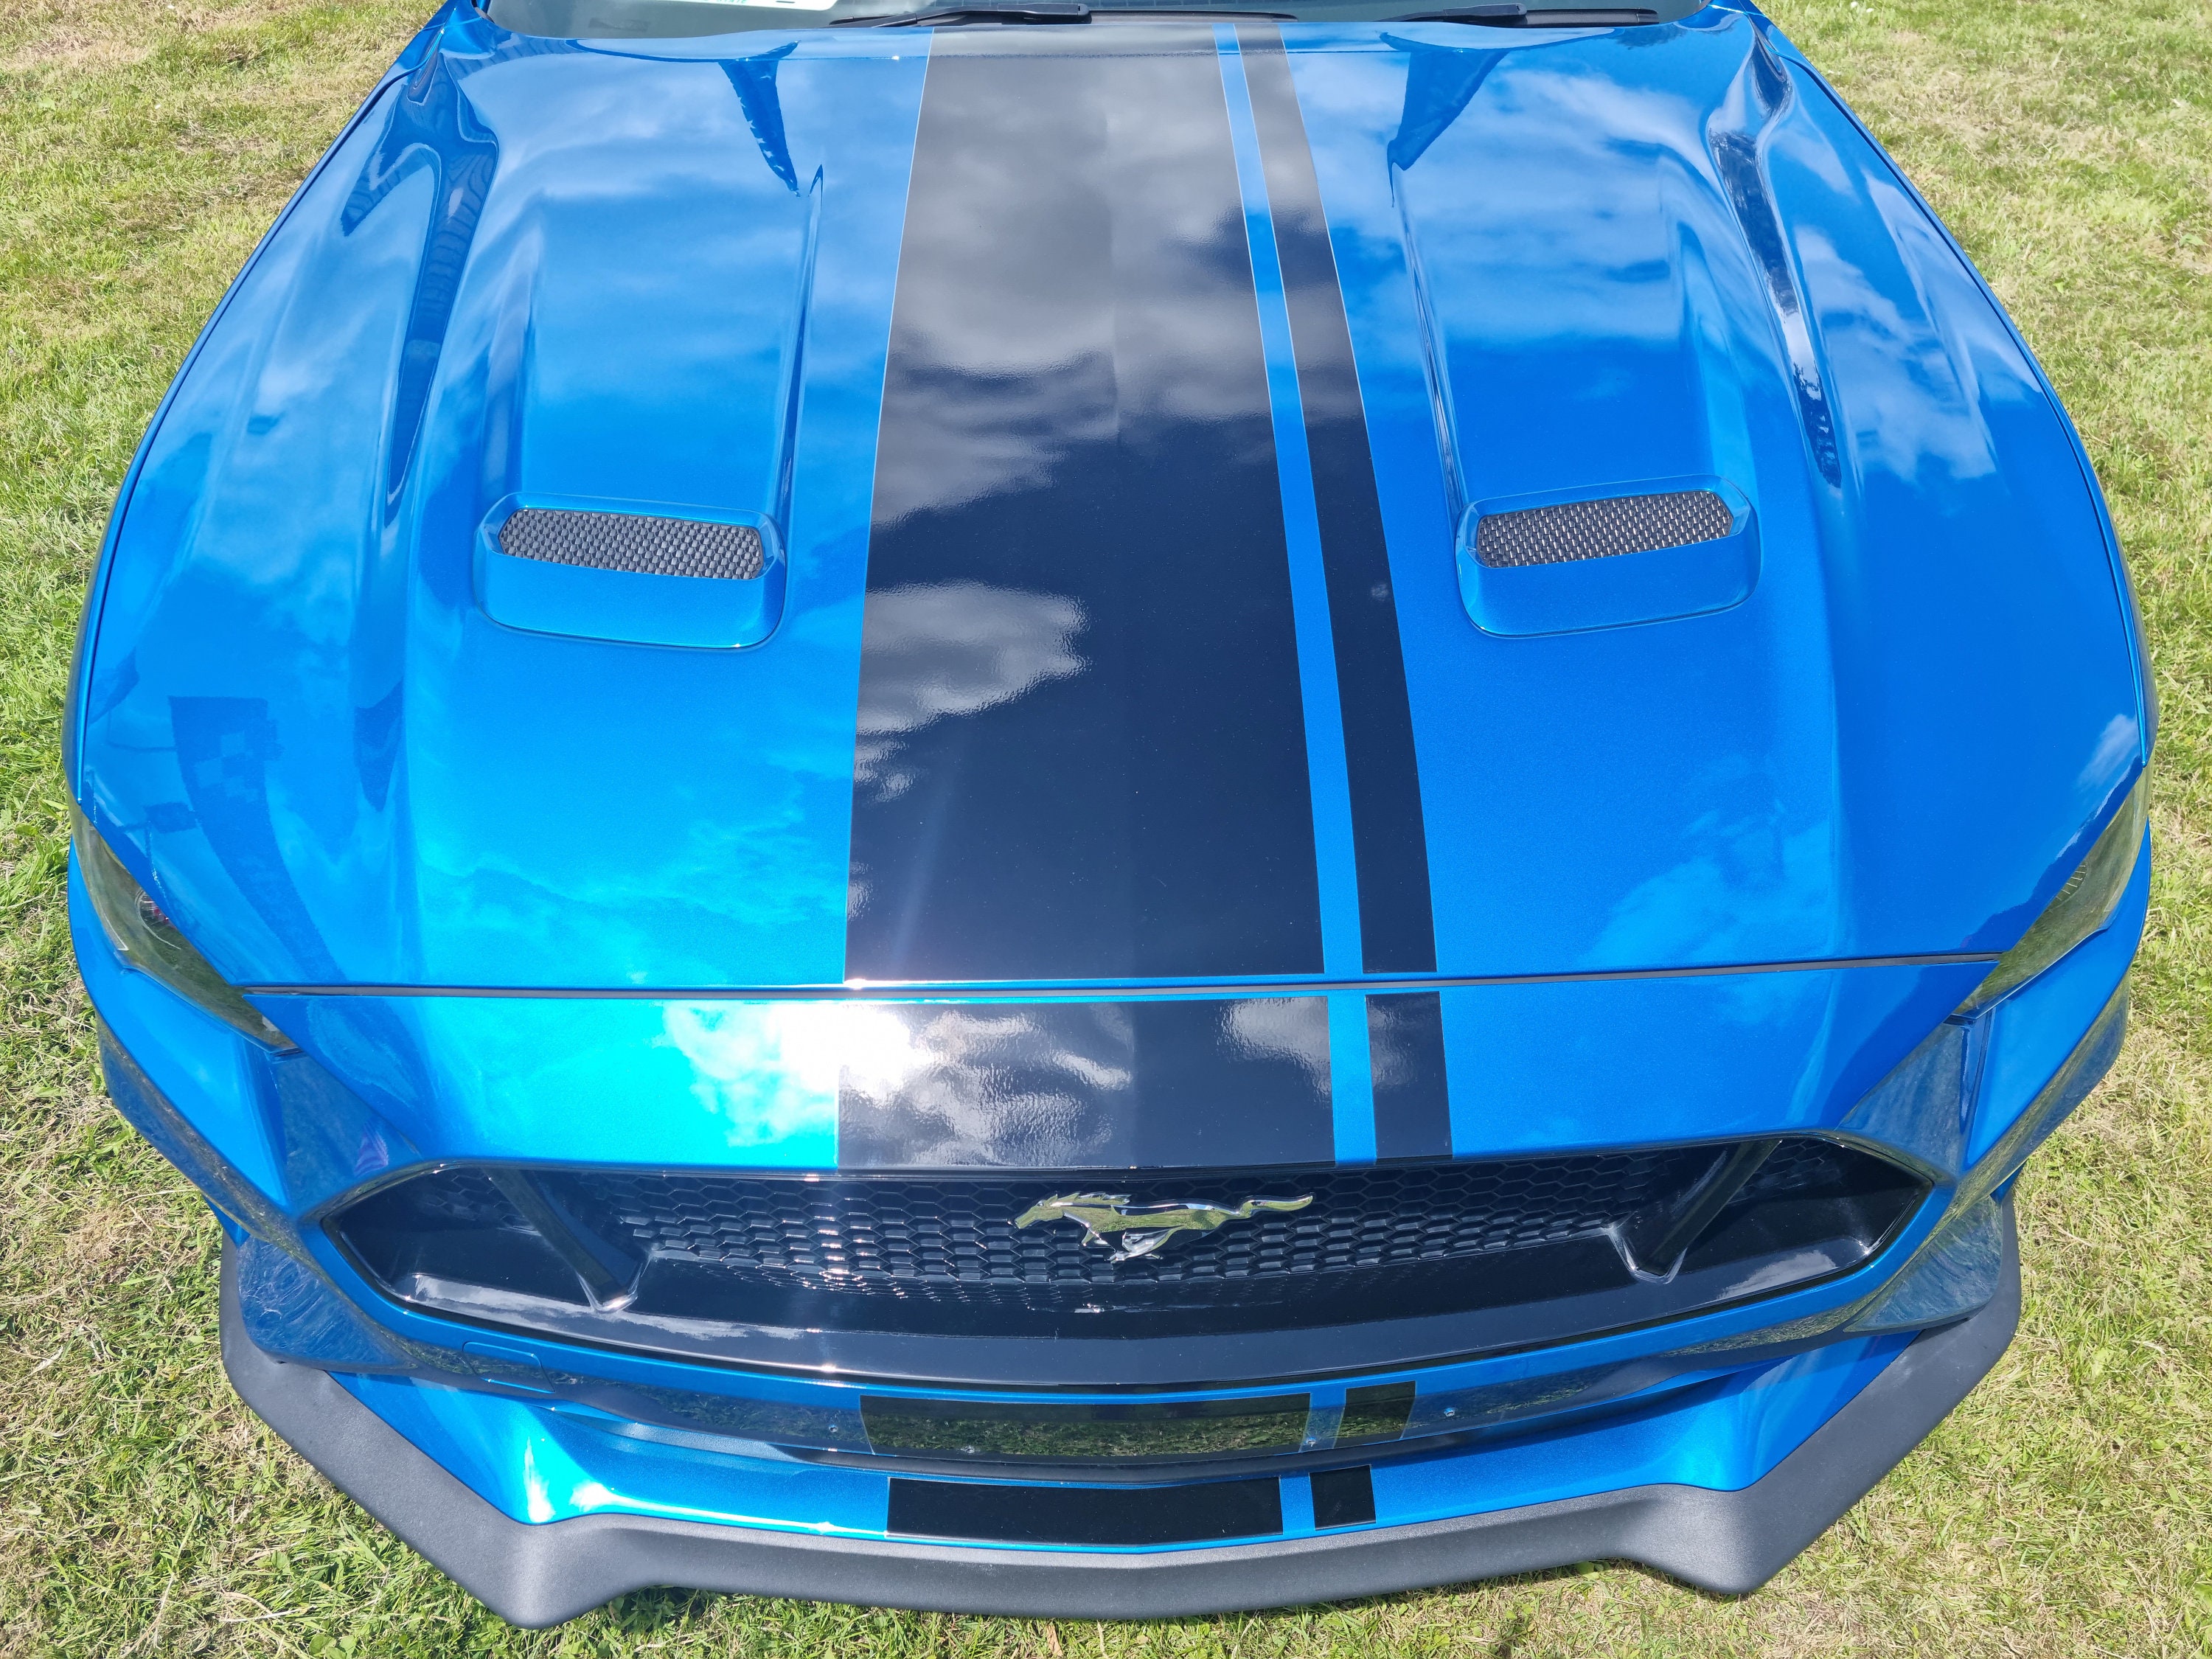 Ford Mustang MACH Motorhaube Aufkleber Auto Vinyl Aufkleber Shelby Sport  Rennstreifen